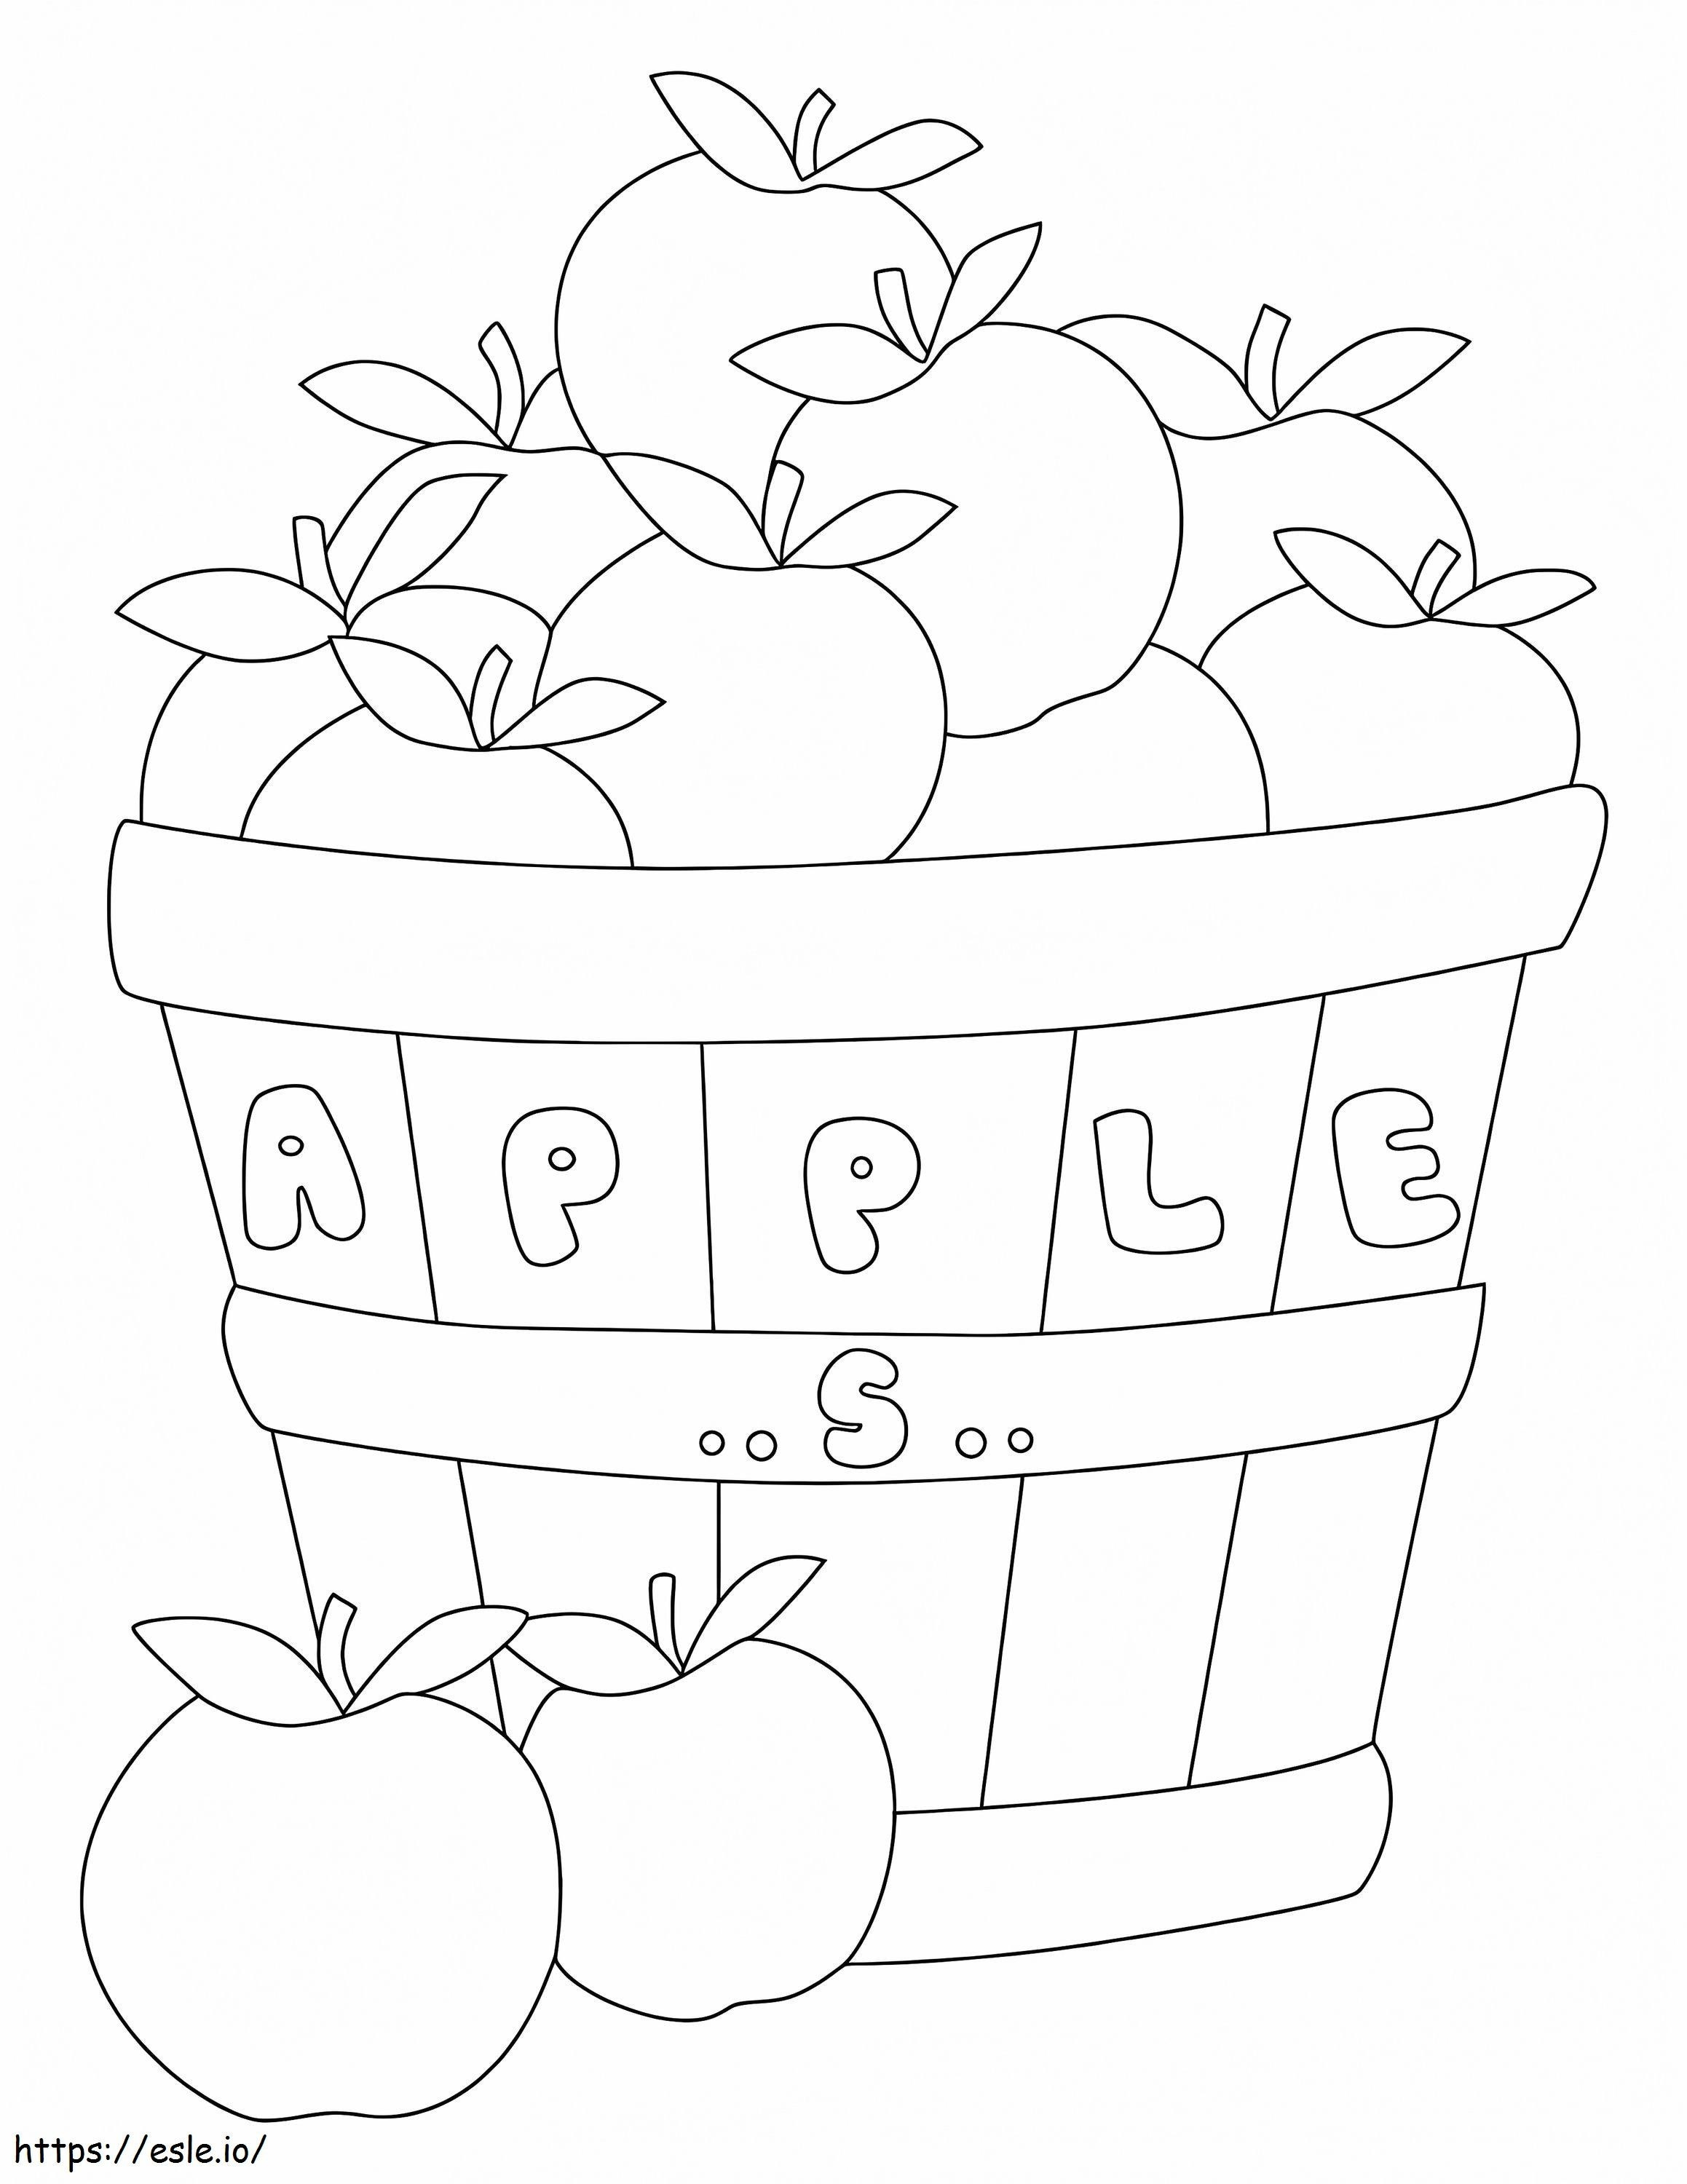 Uma caixa de maçãs e duas maçãs para colorir